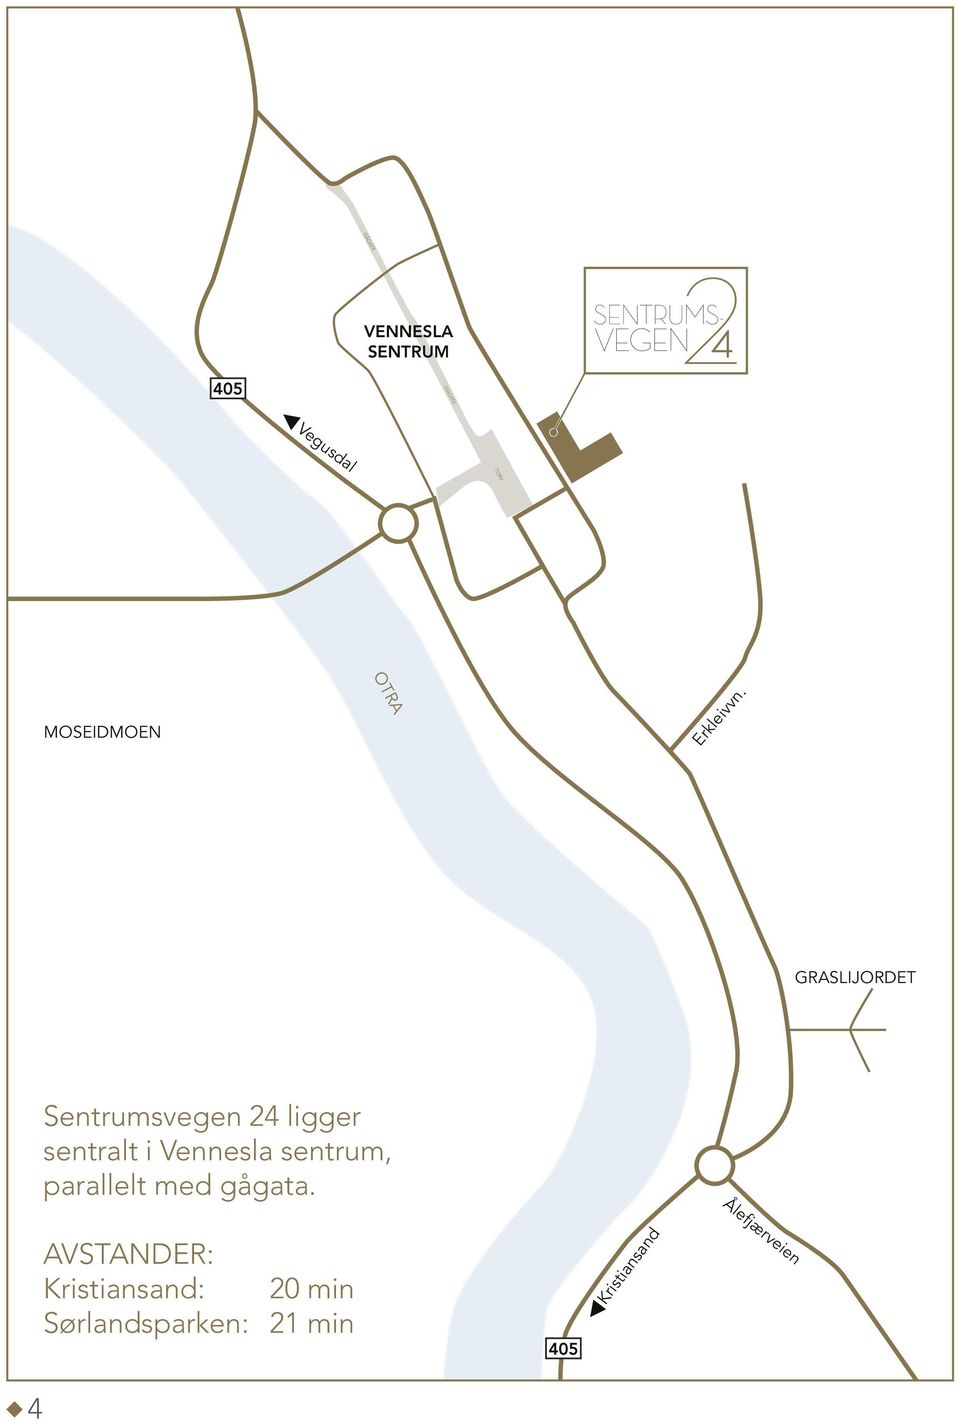 GRASLIJORDET Sentrumsvegen 24 ligger sentralt i Vennesla